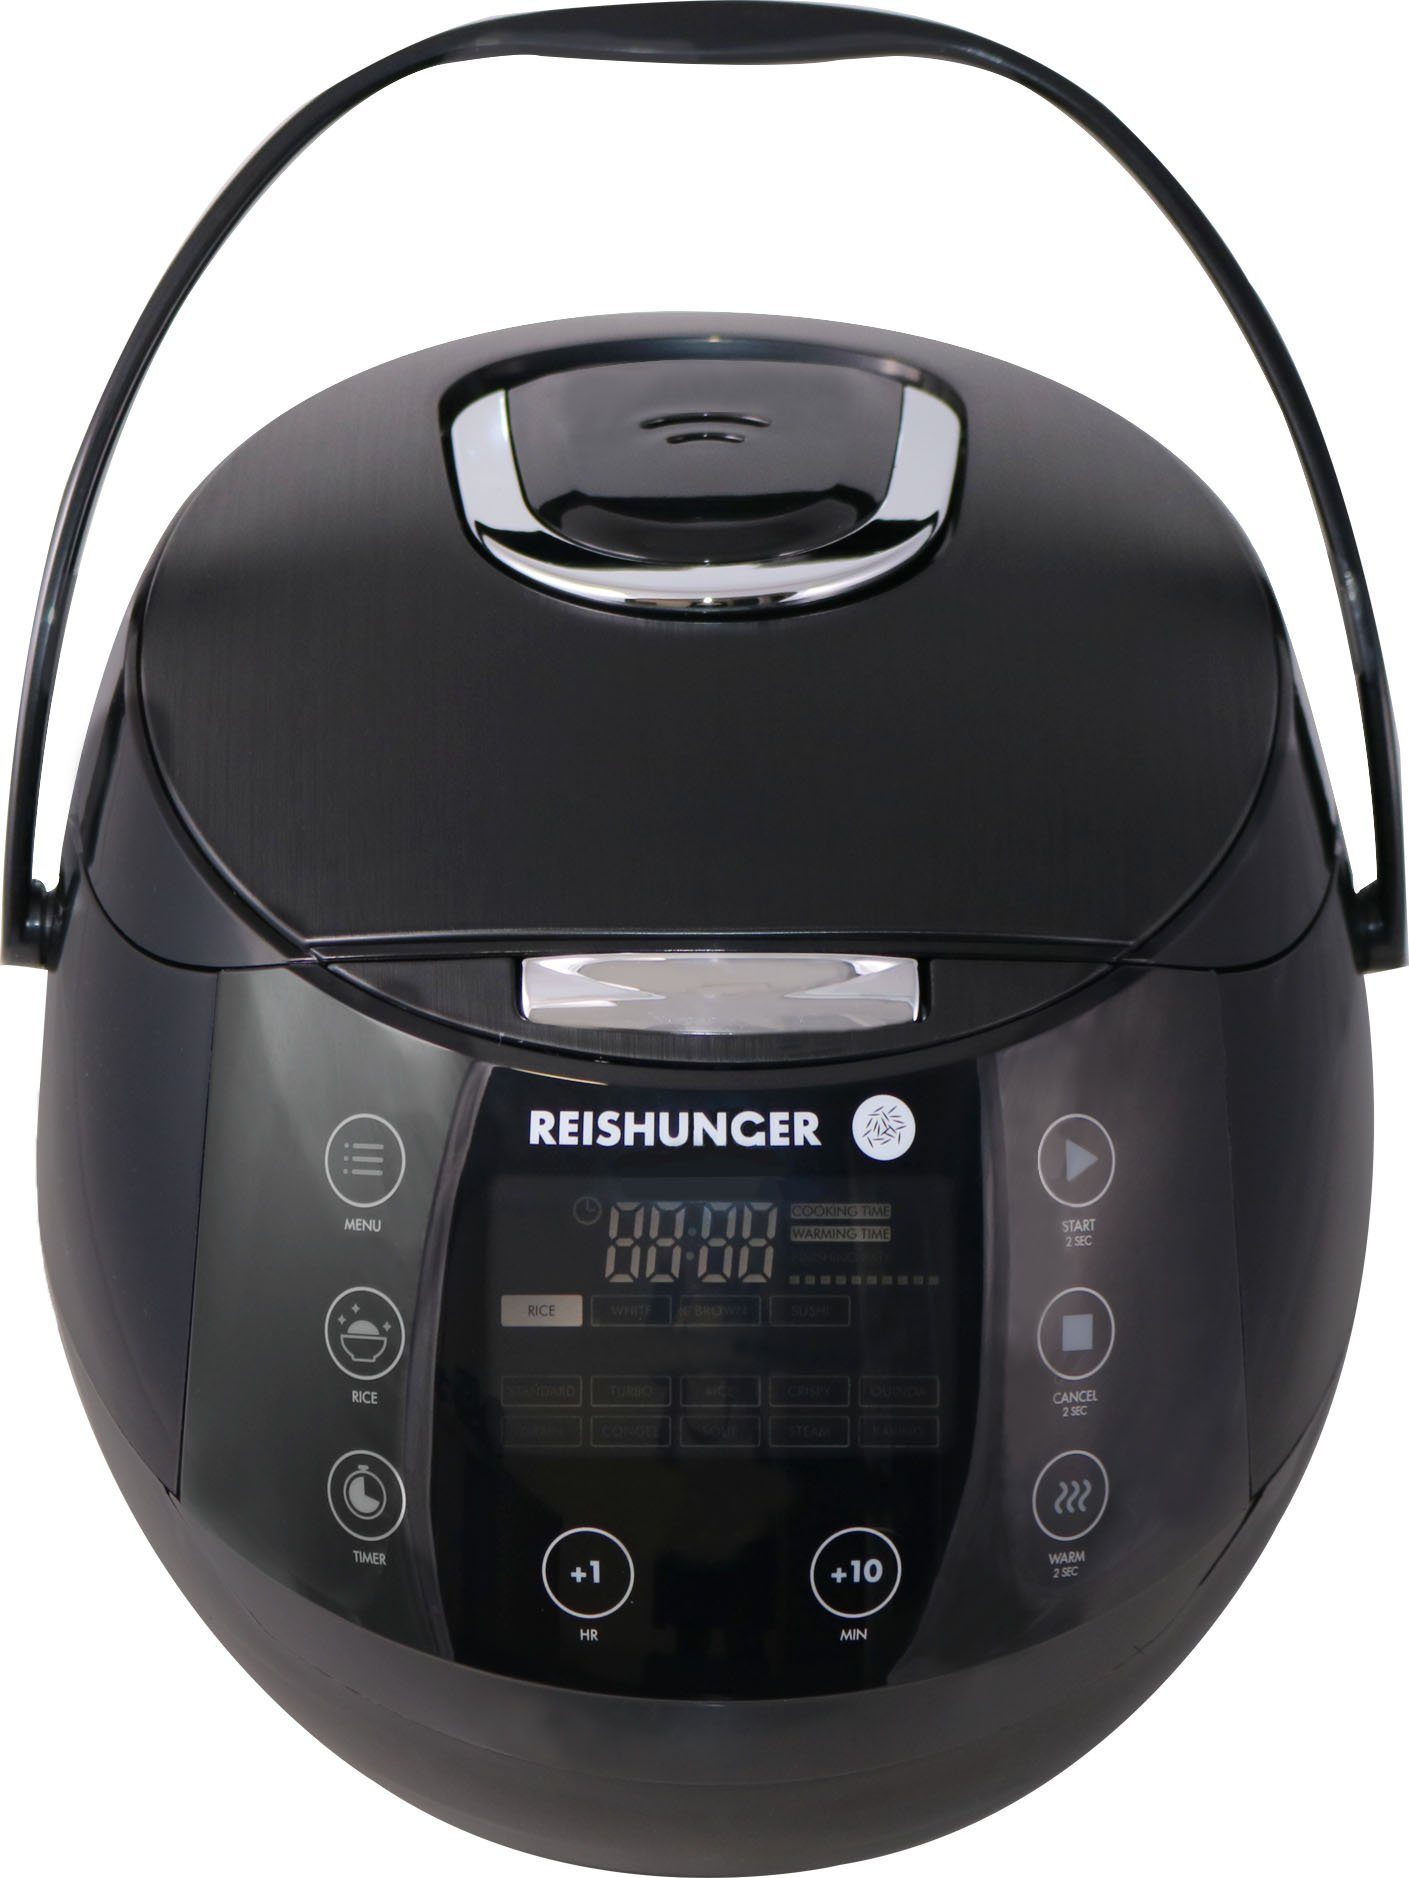 Reishunger Reiskocher 538-DRK-B - Reiskocher - schwarz